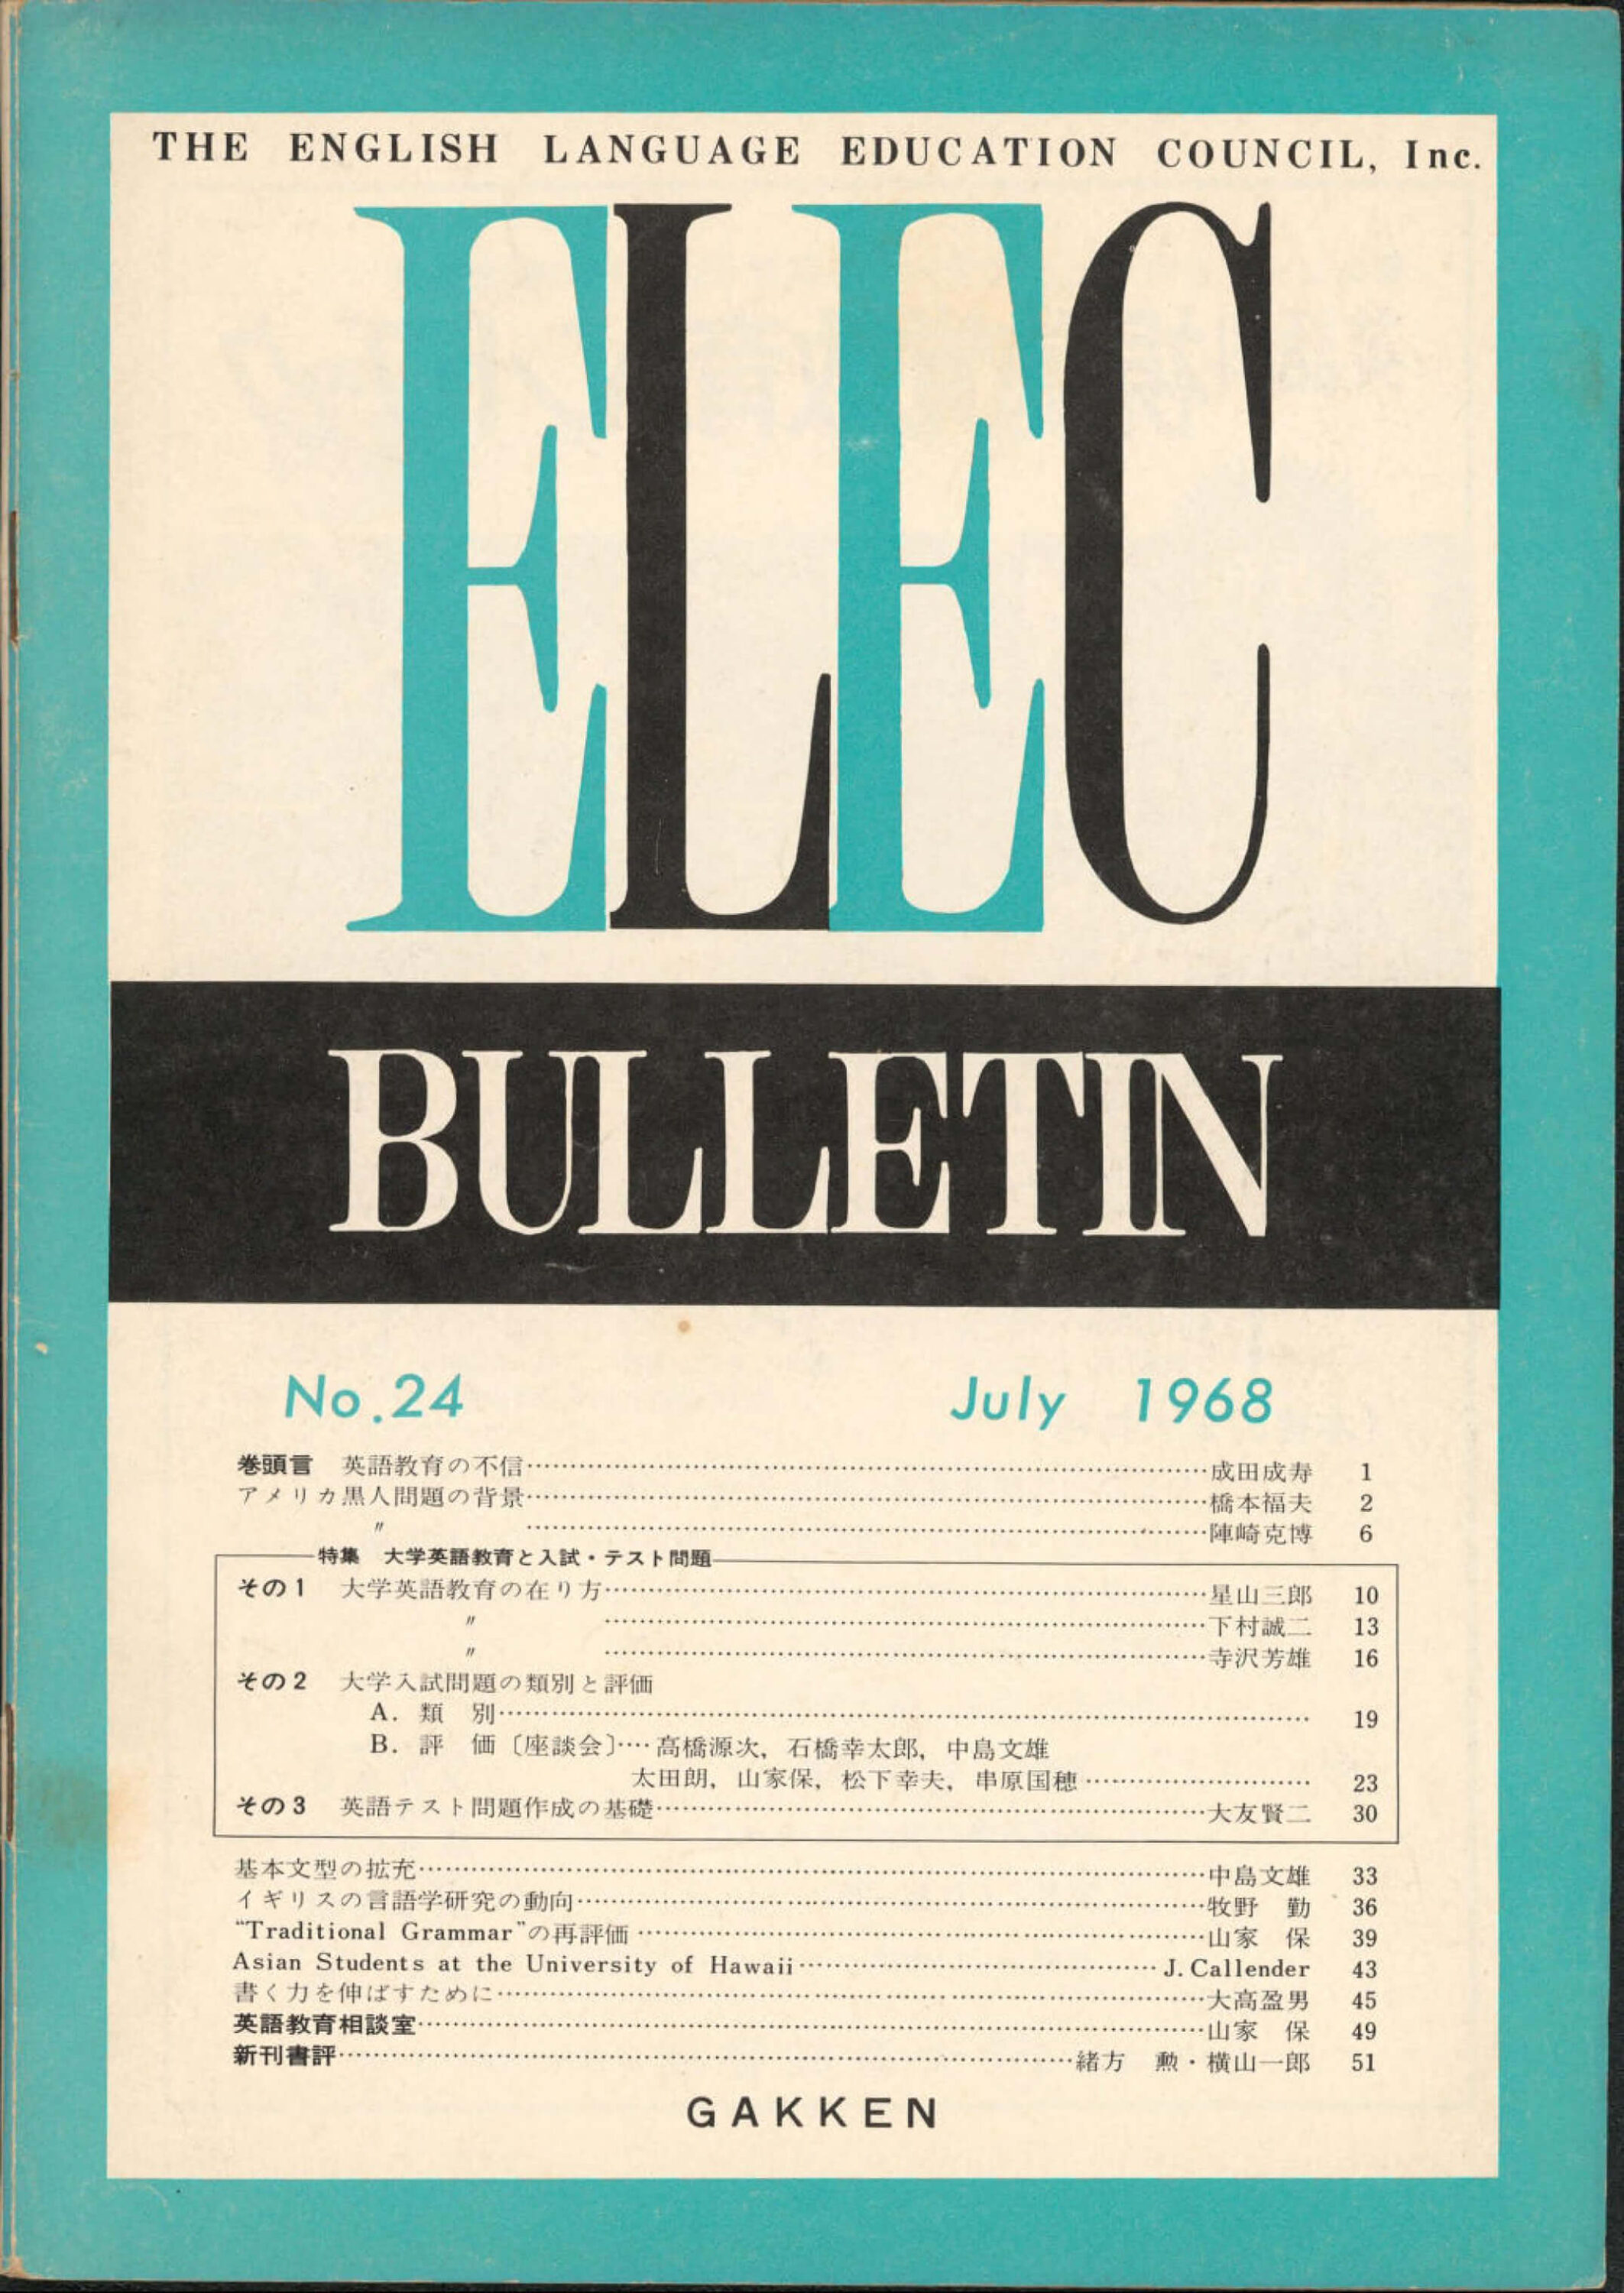 ELEC BULLETIN No. 24　July 1968